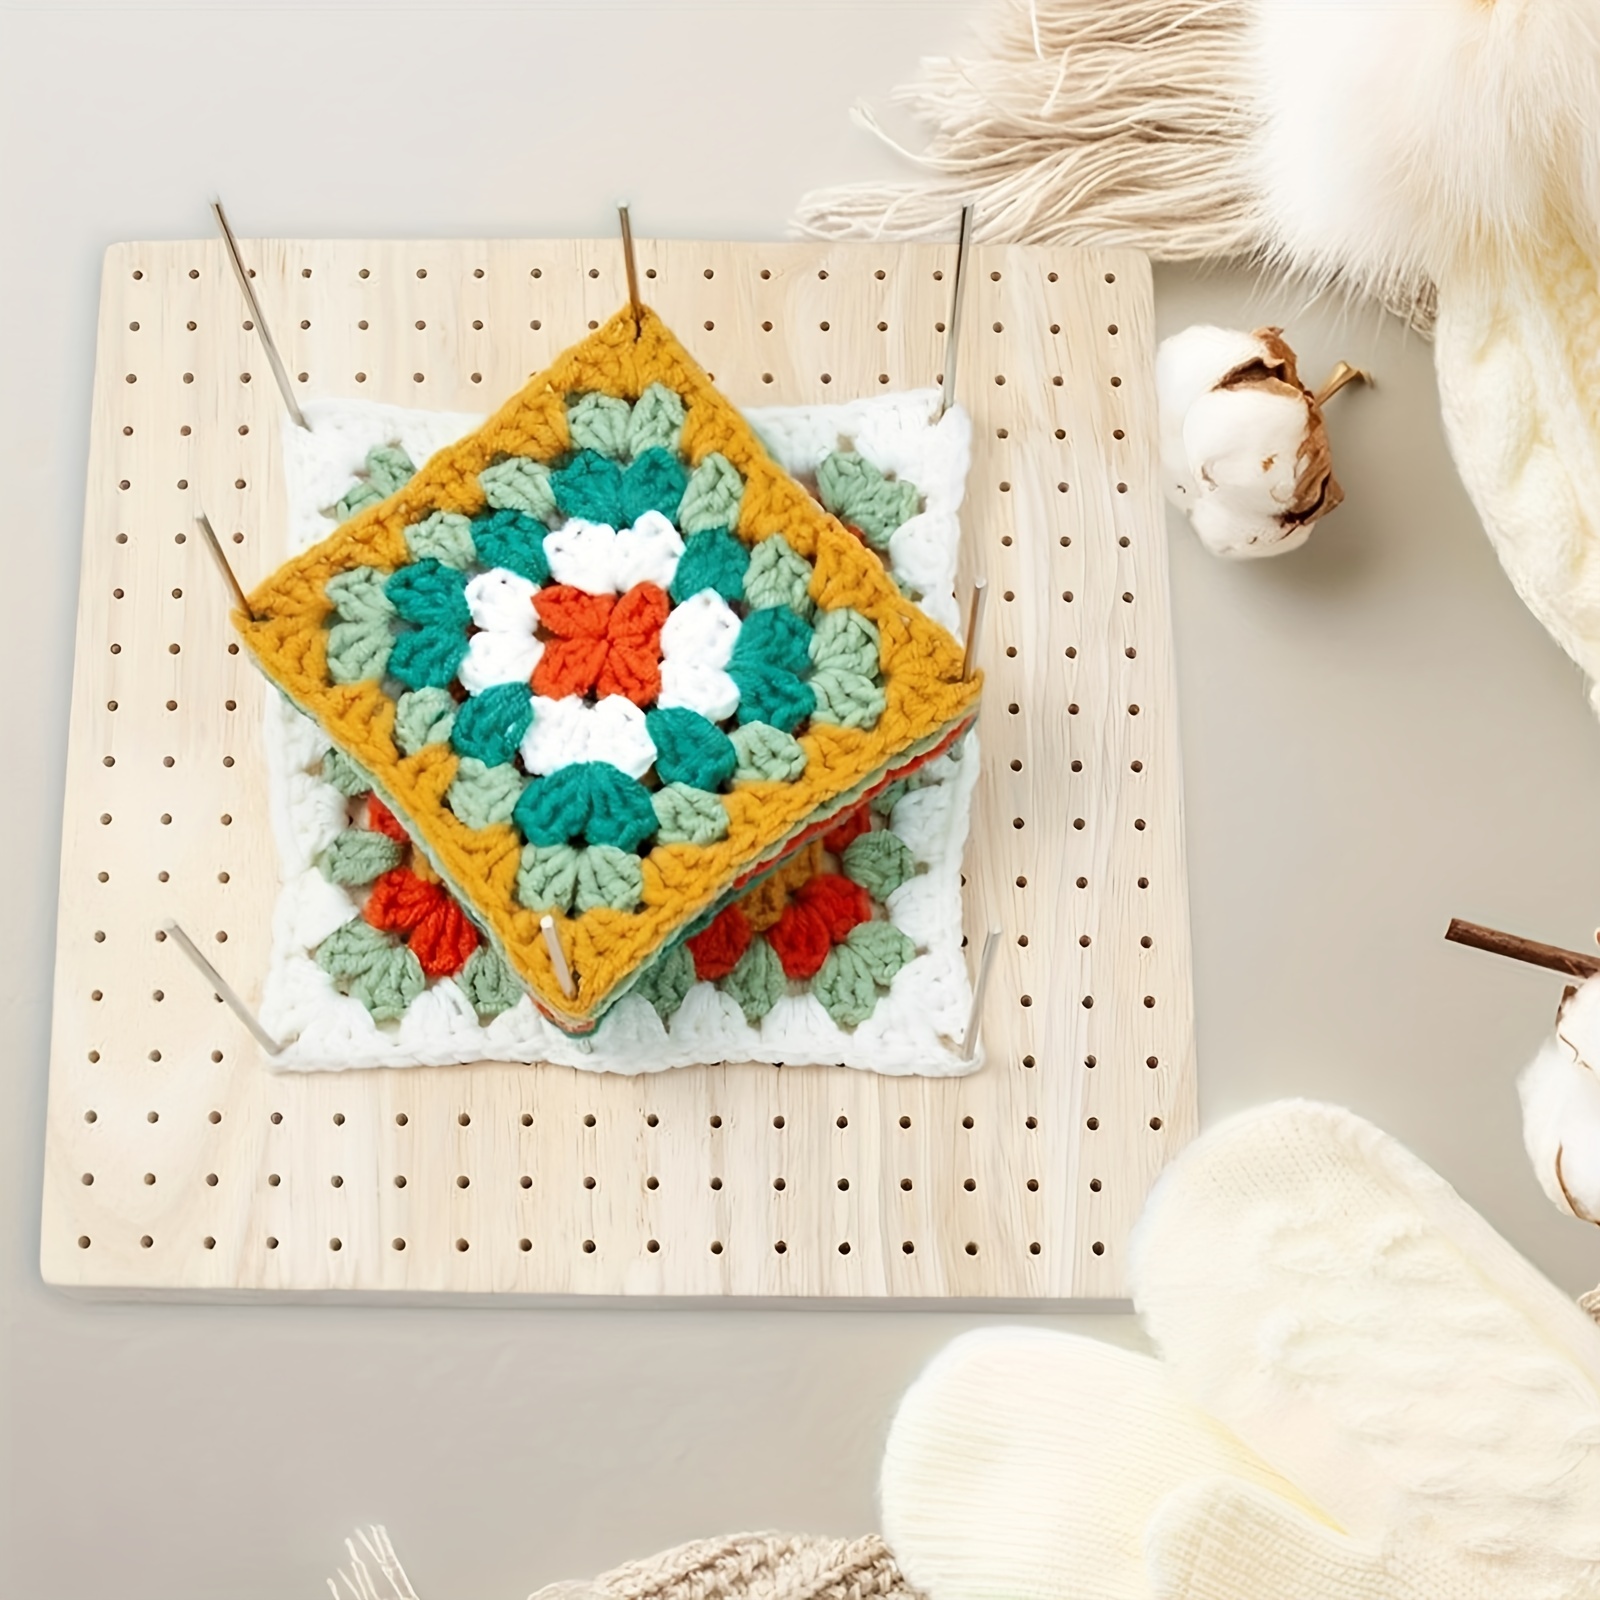 Sibba Knitting Crochet Ring Supplies Blocking Mats Board Yarn